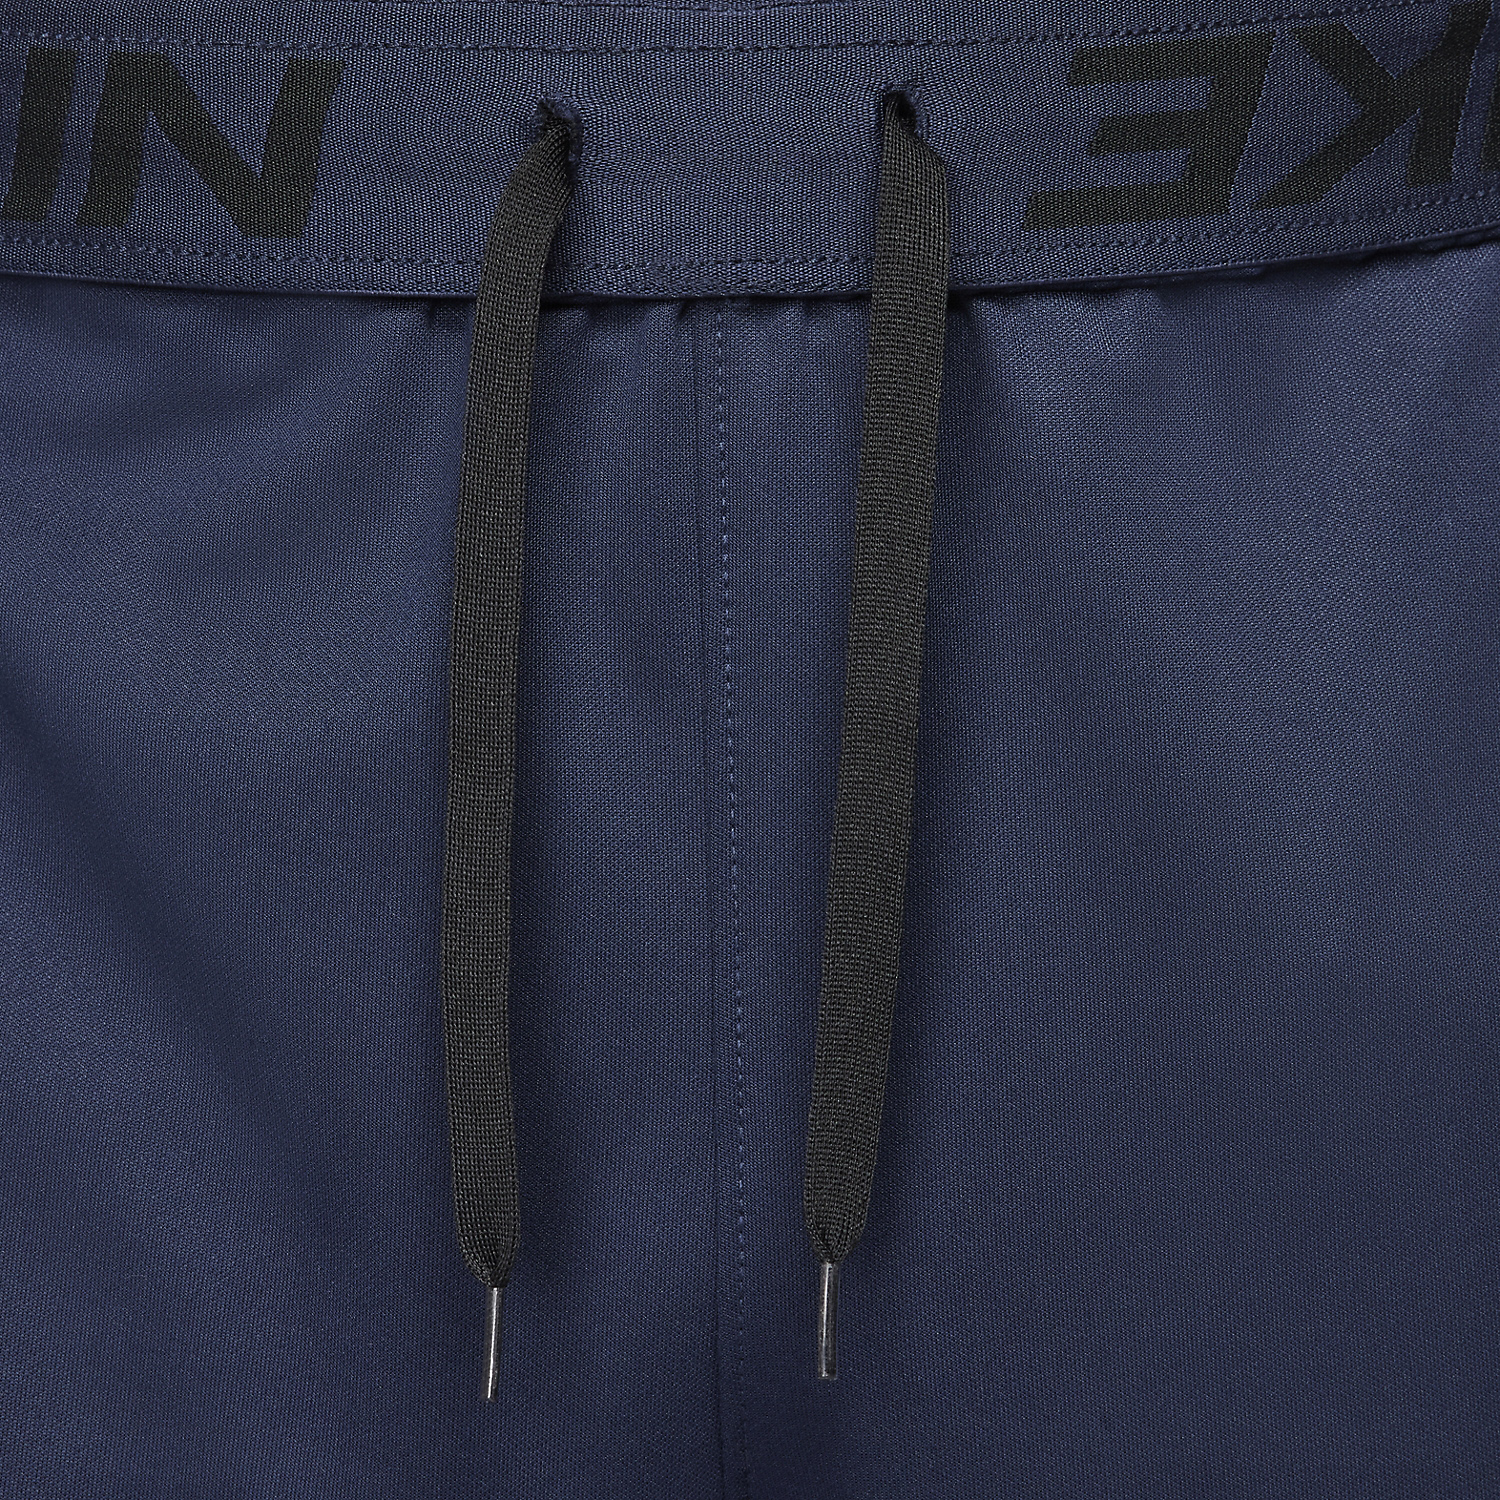 Nike Dri-FIT Totality Men's Training Pants - Obsidian/Black